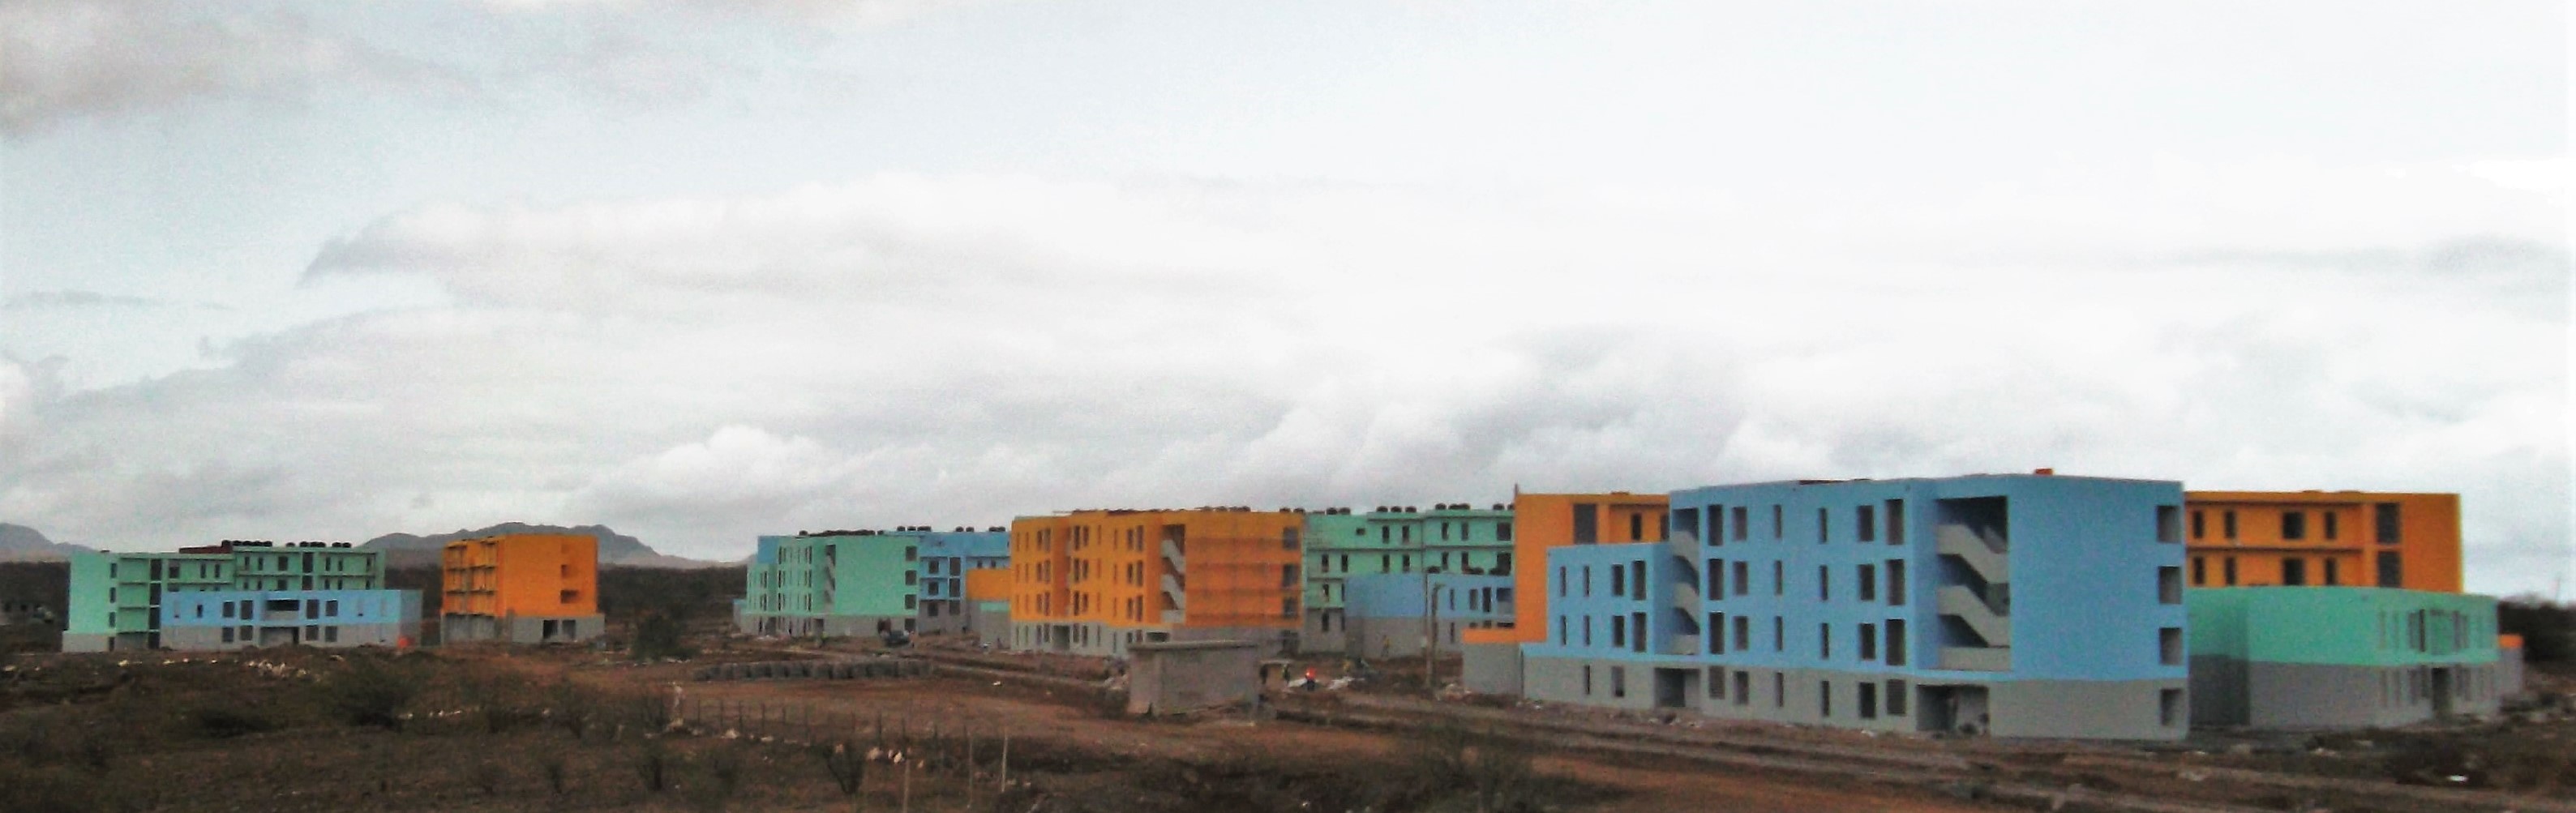 Central Projectos conclui a fiscalização do programa “Casa para todos”, em Cabo Verde